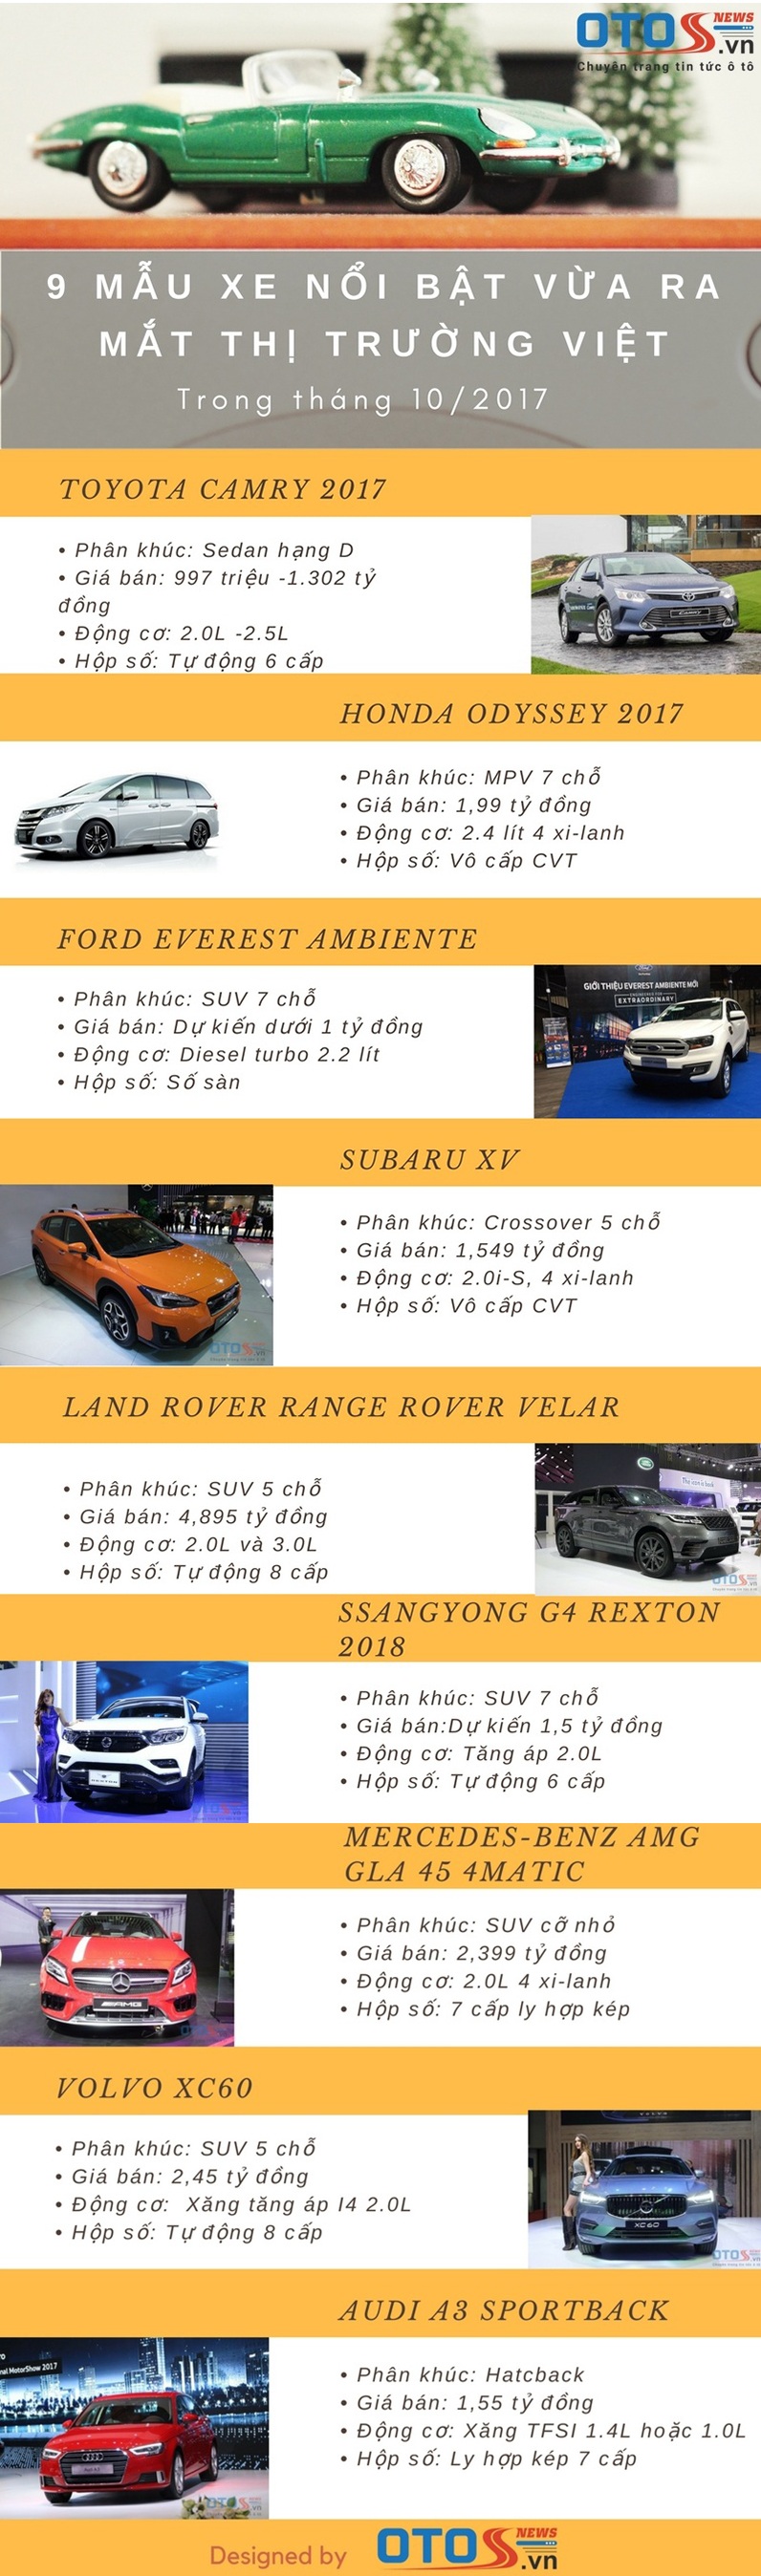 9 mẫu xe nổi bật vừa ra mắt thị trường Việt trong tháng 10/2017